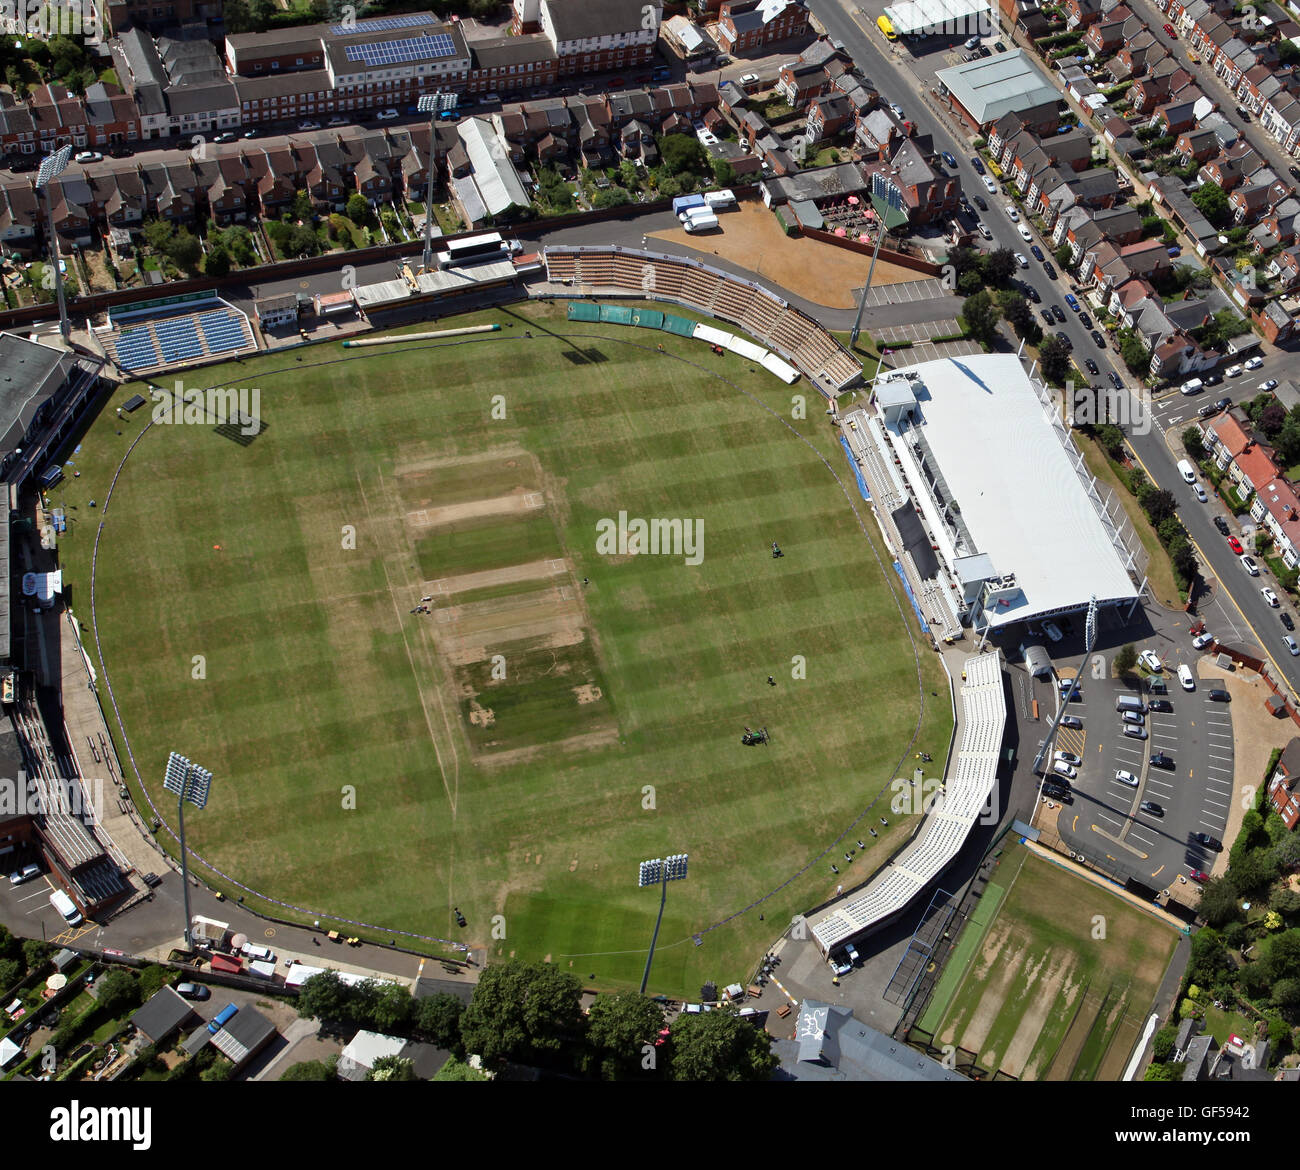 Vue aérienne du terrain, comté de Northamptonshire accueil County Cricket Club, UK Banque D'Images